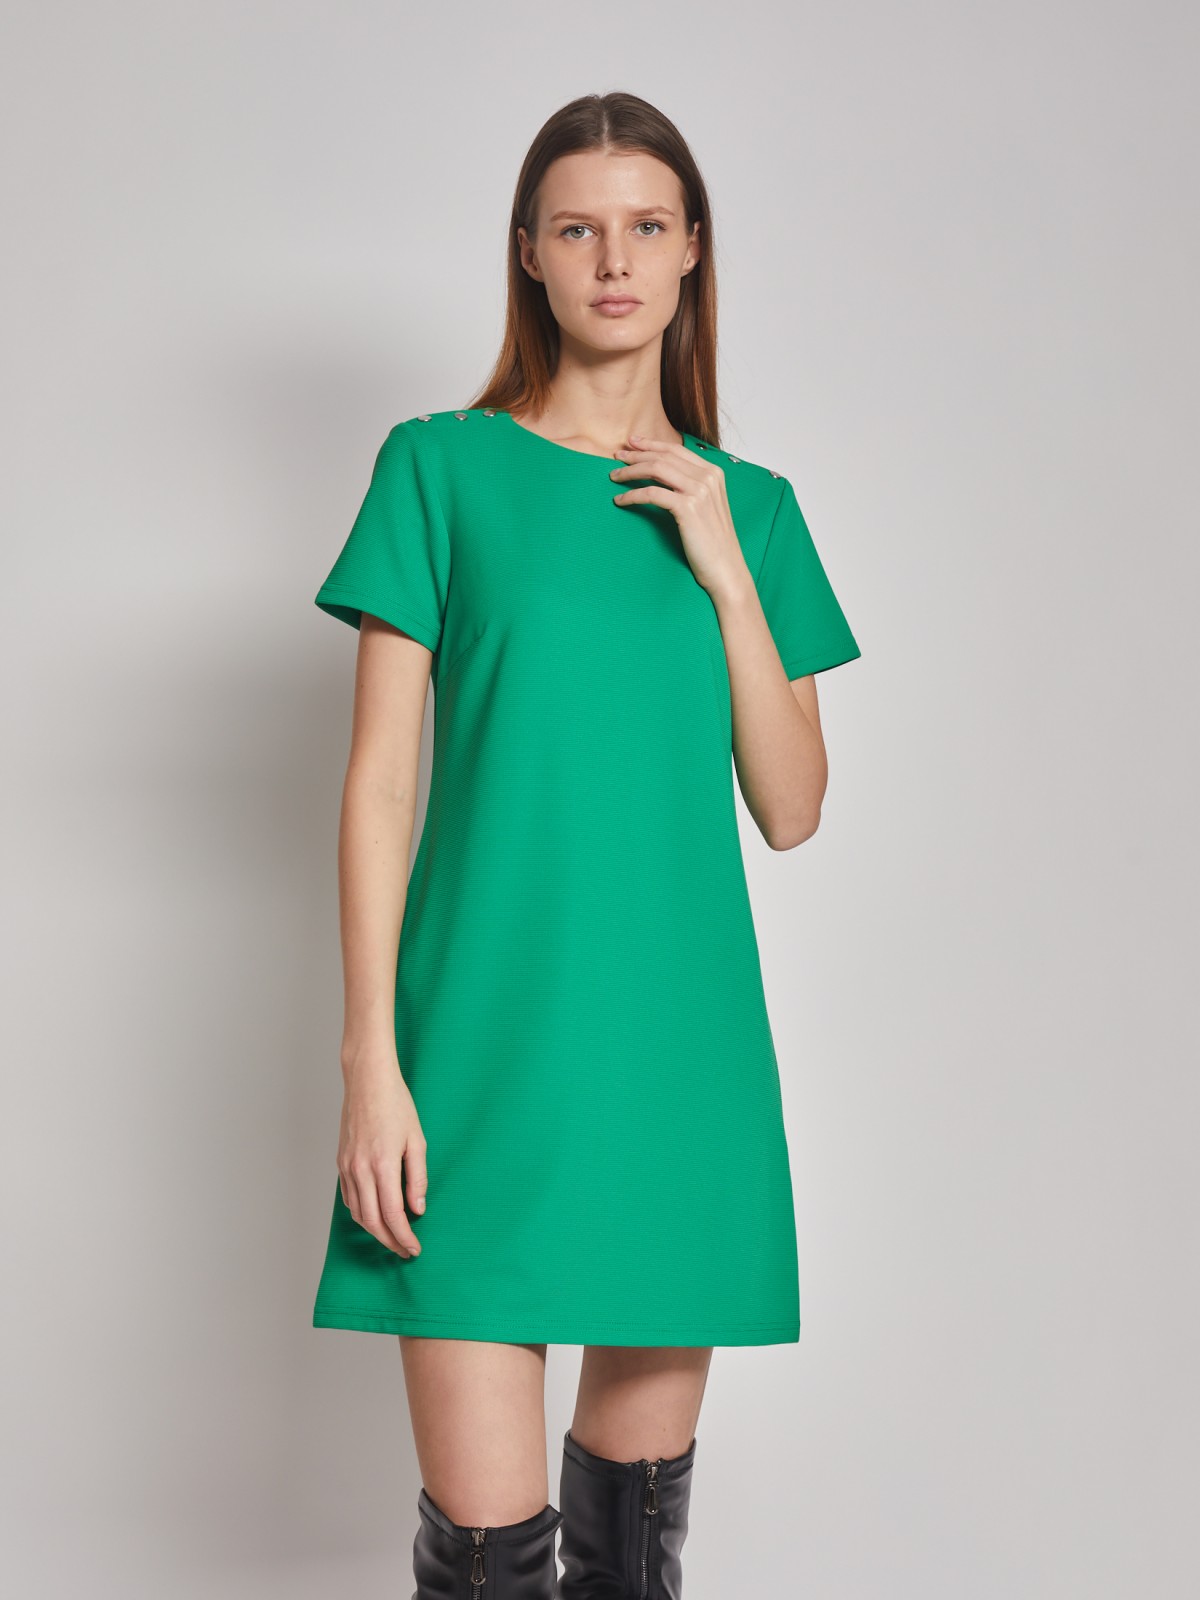 Платье кроеное zolla 02312819F032, цвет зеленый, размер S - фото 1